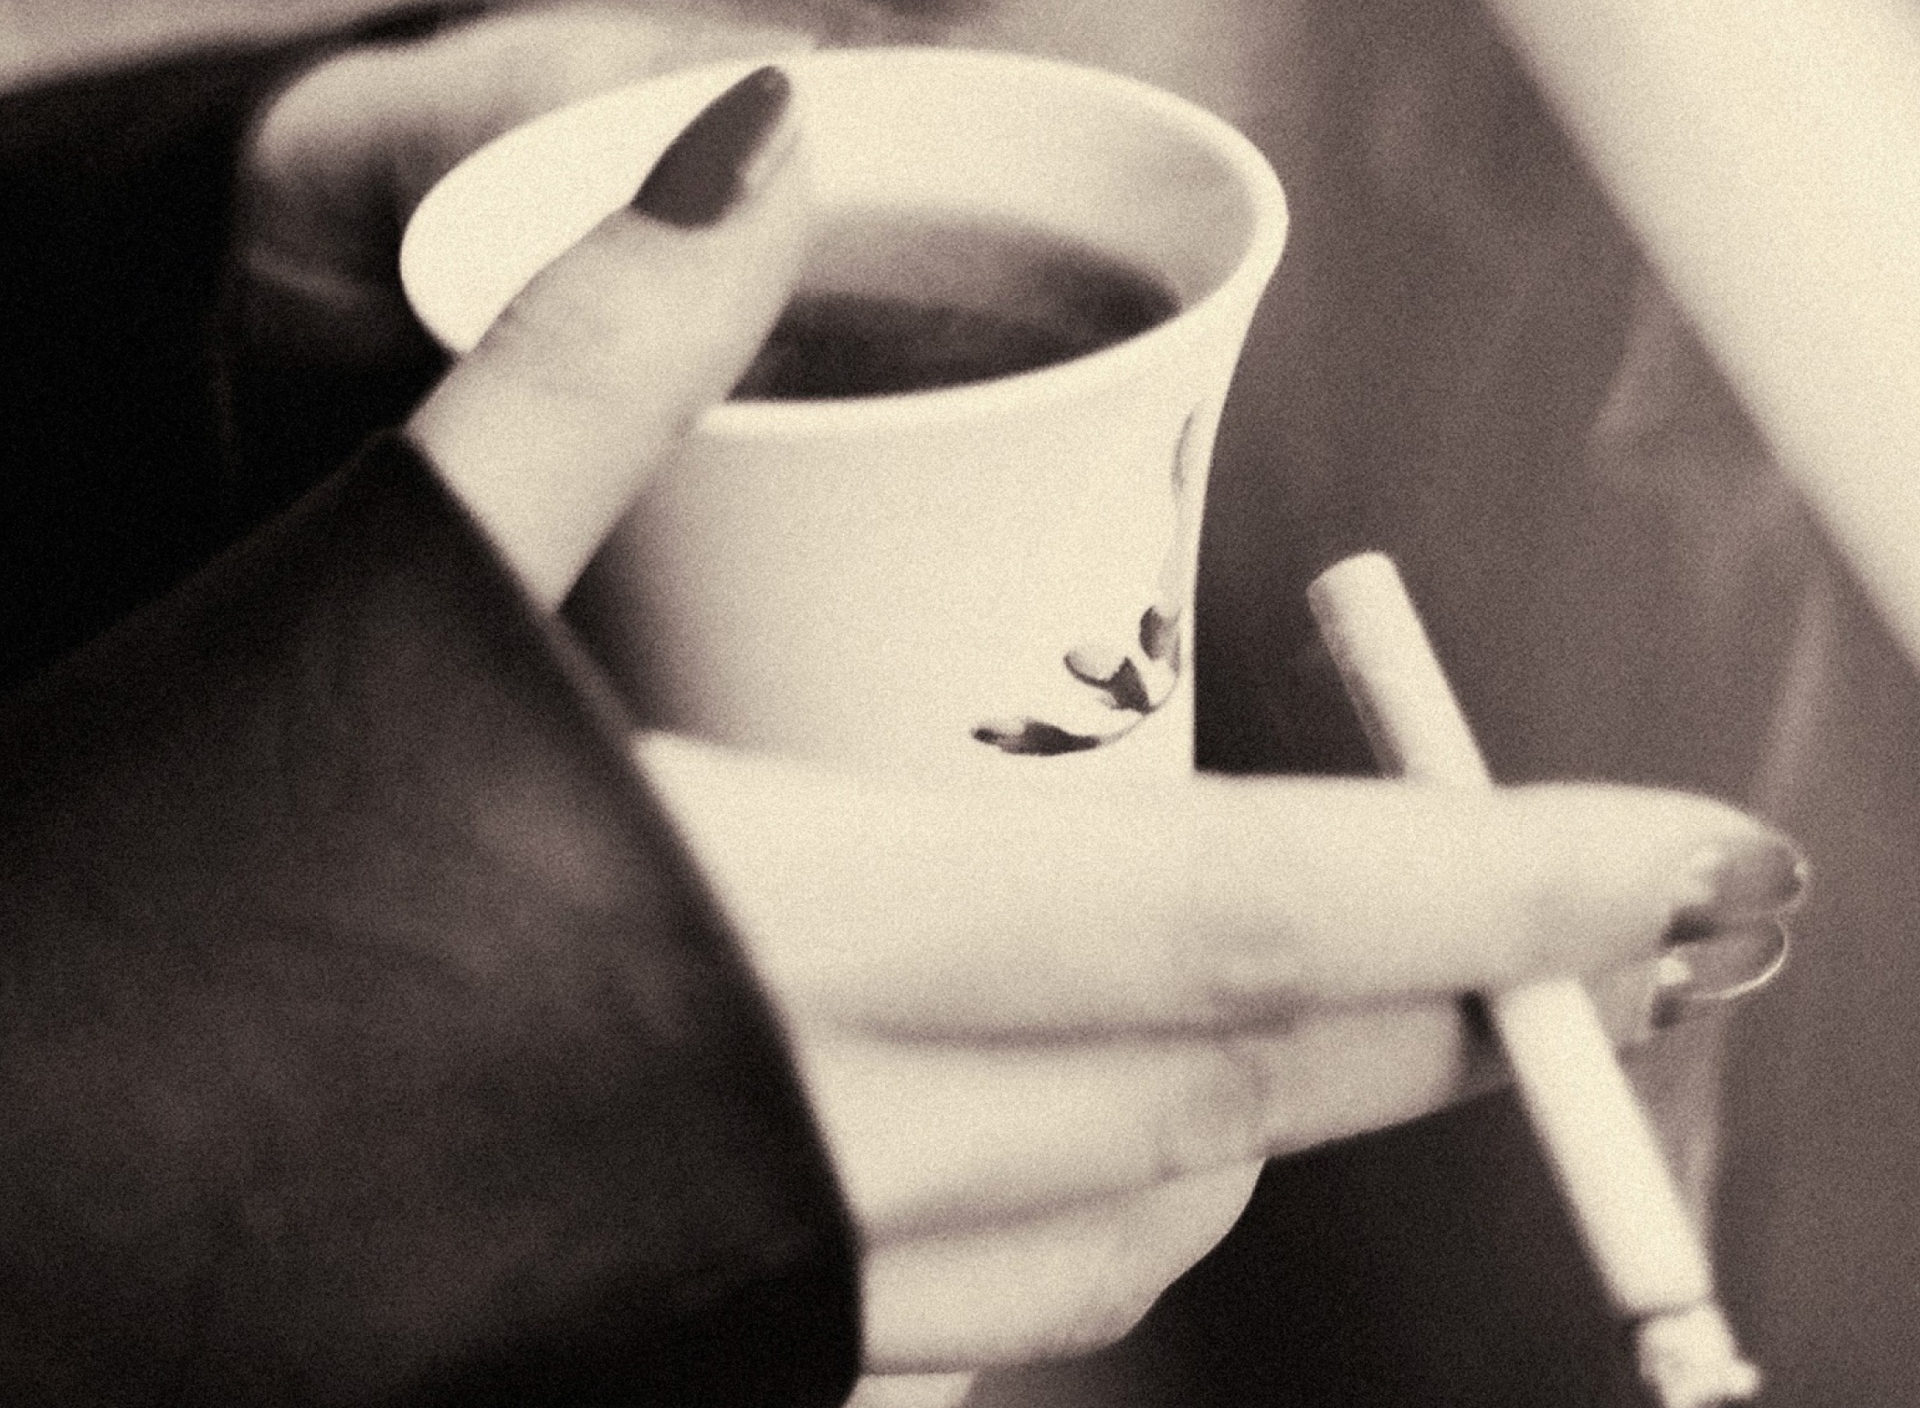 Hot Coffee In Her Hands wallpaper 1920x1408